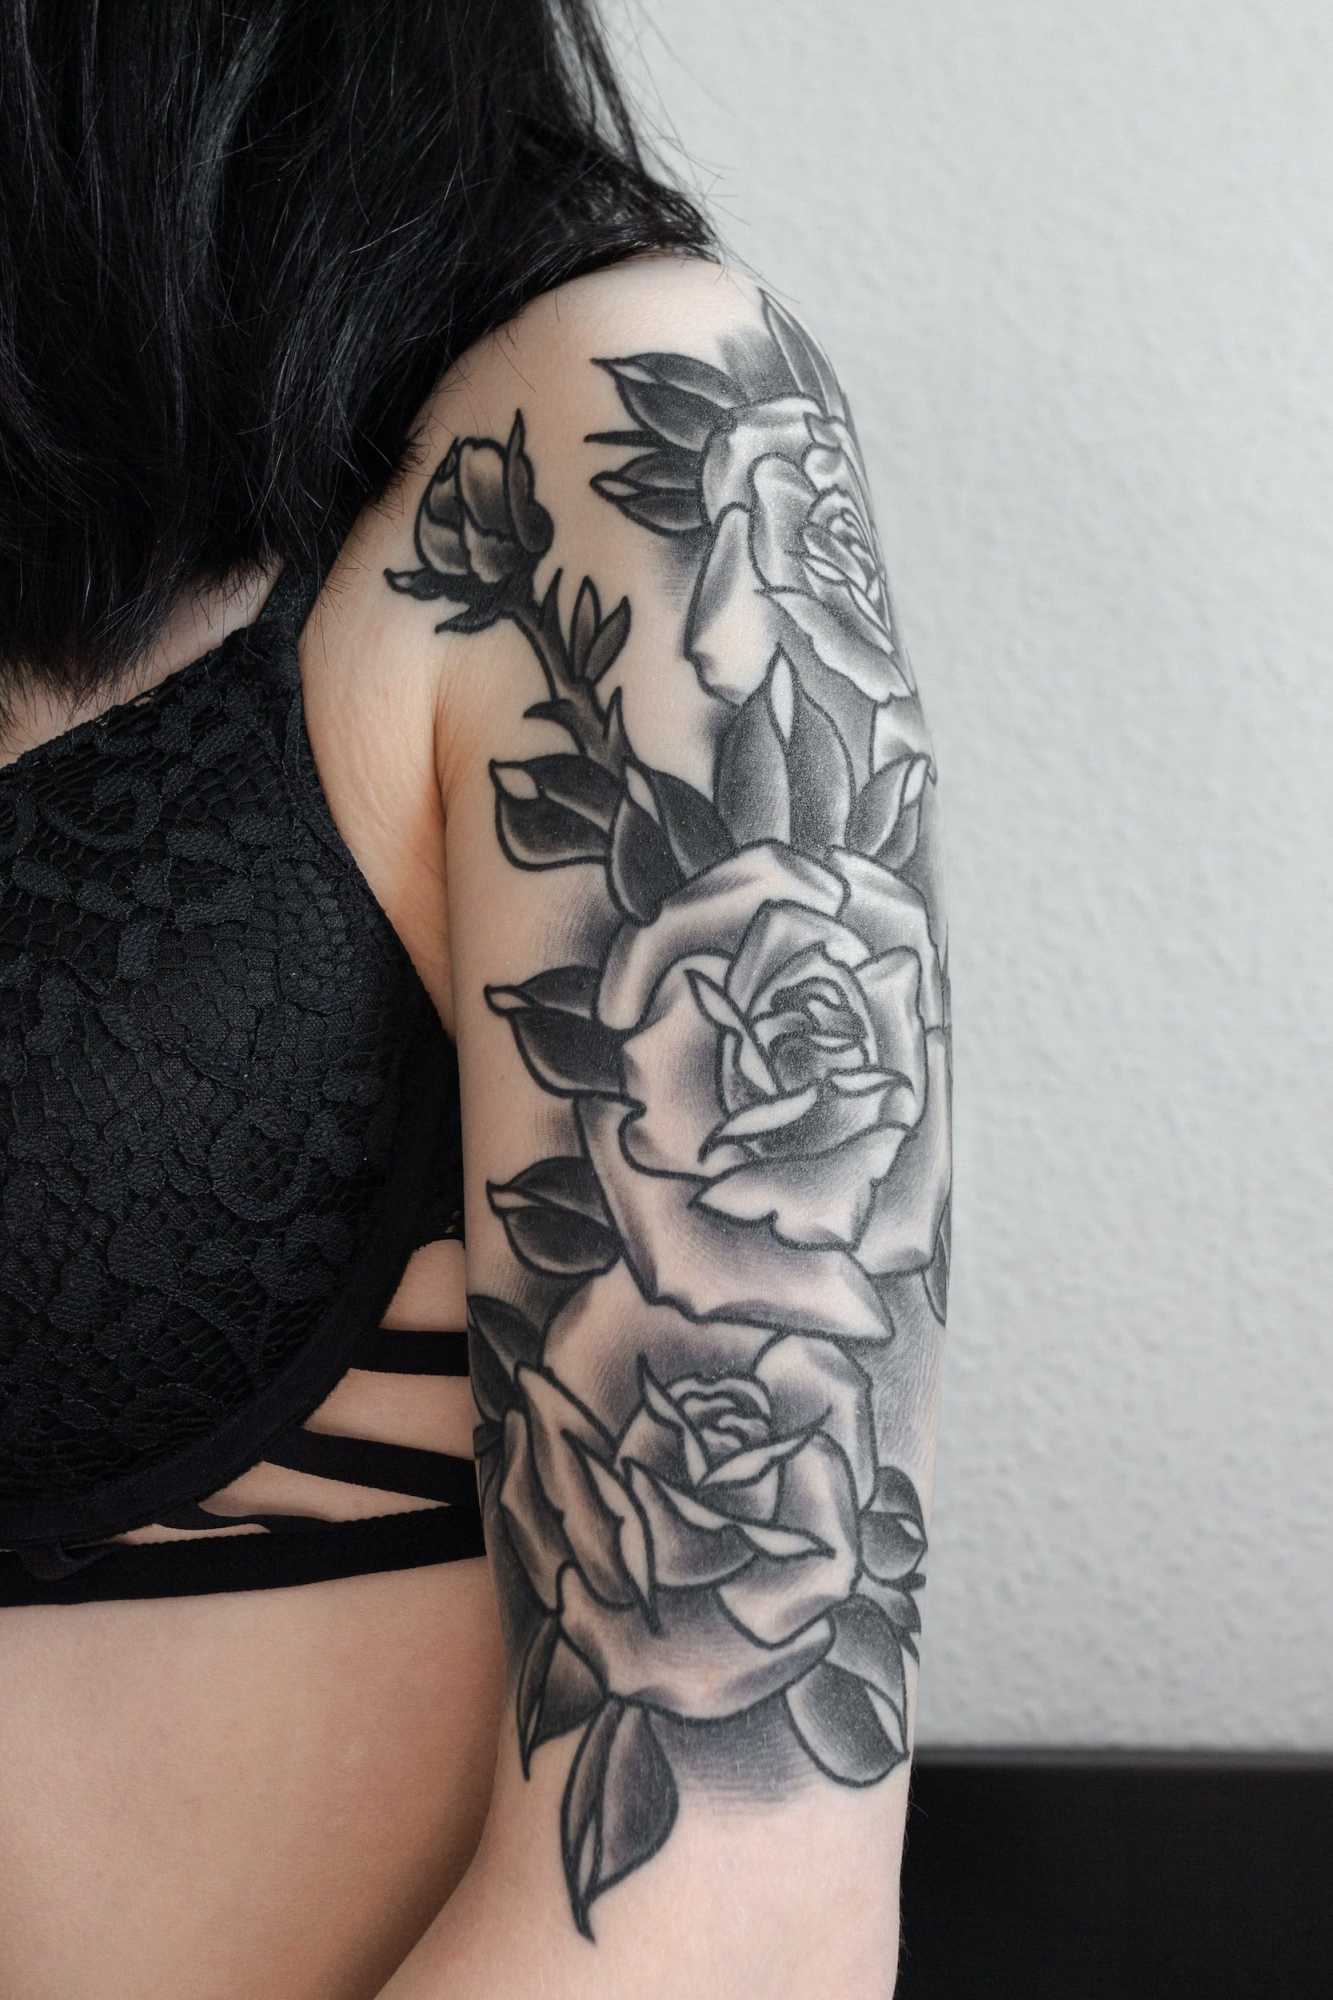 Black Rose Tattoo Ideas - Get Creative With Unique Designs